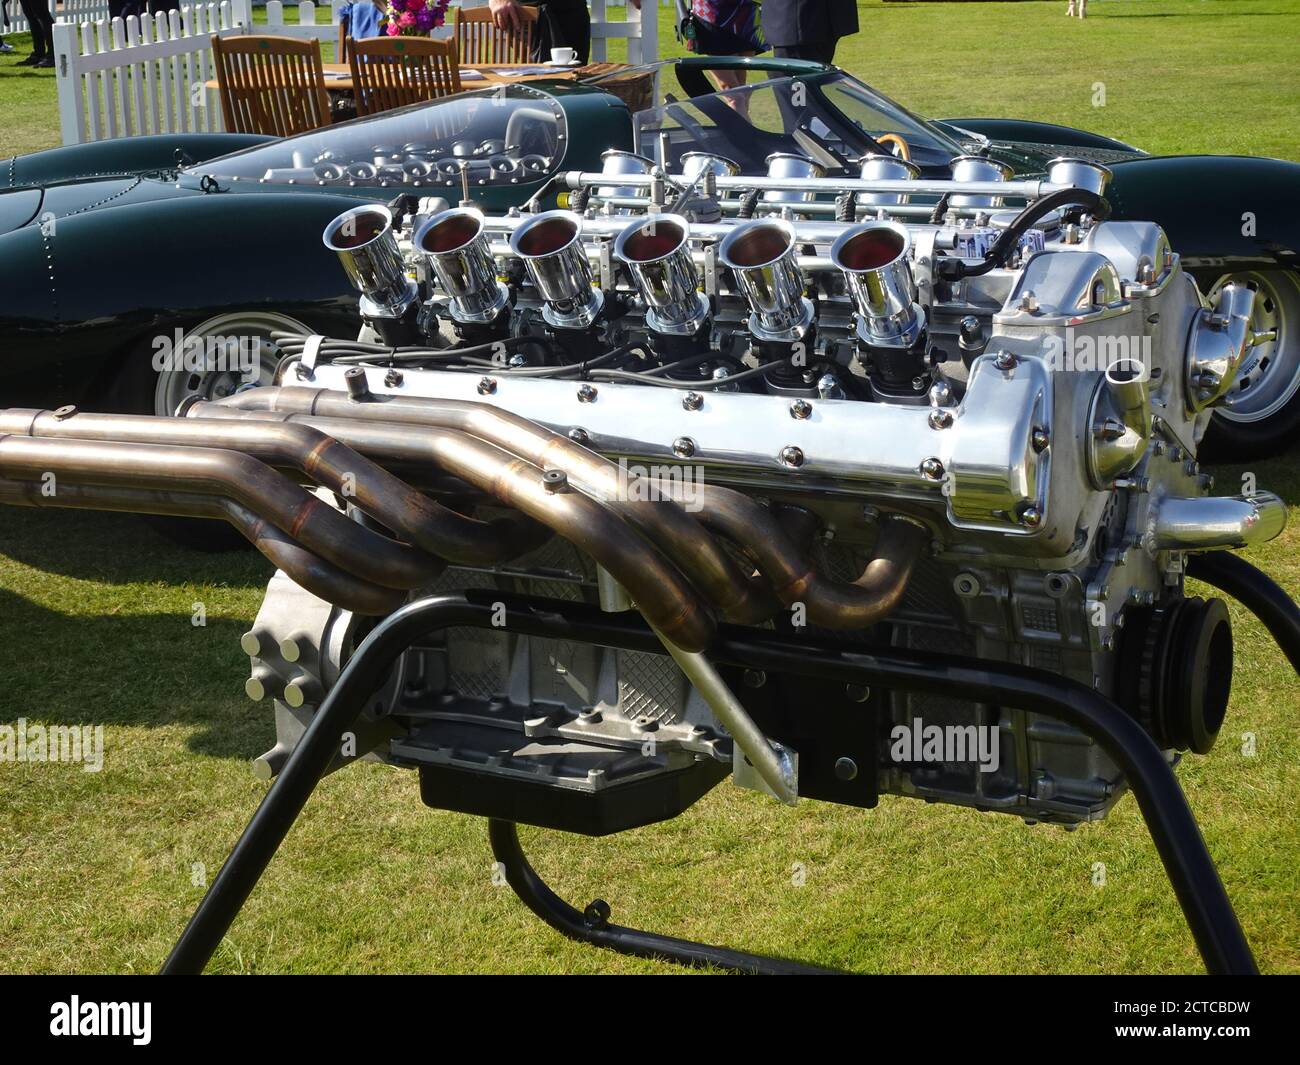 Blenheim Palace, Oxford, Großbritannien. September 2020. Jaguar V-12 Motor aus der LEGENDE auf dem berühmten Salon Prive im Blenheim Palace Quelle: Motofoto/Alamy Live News Stockfoto